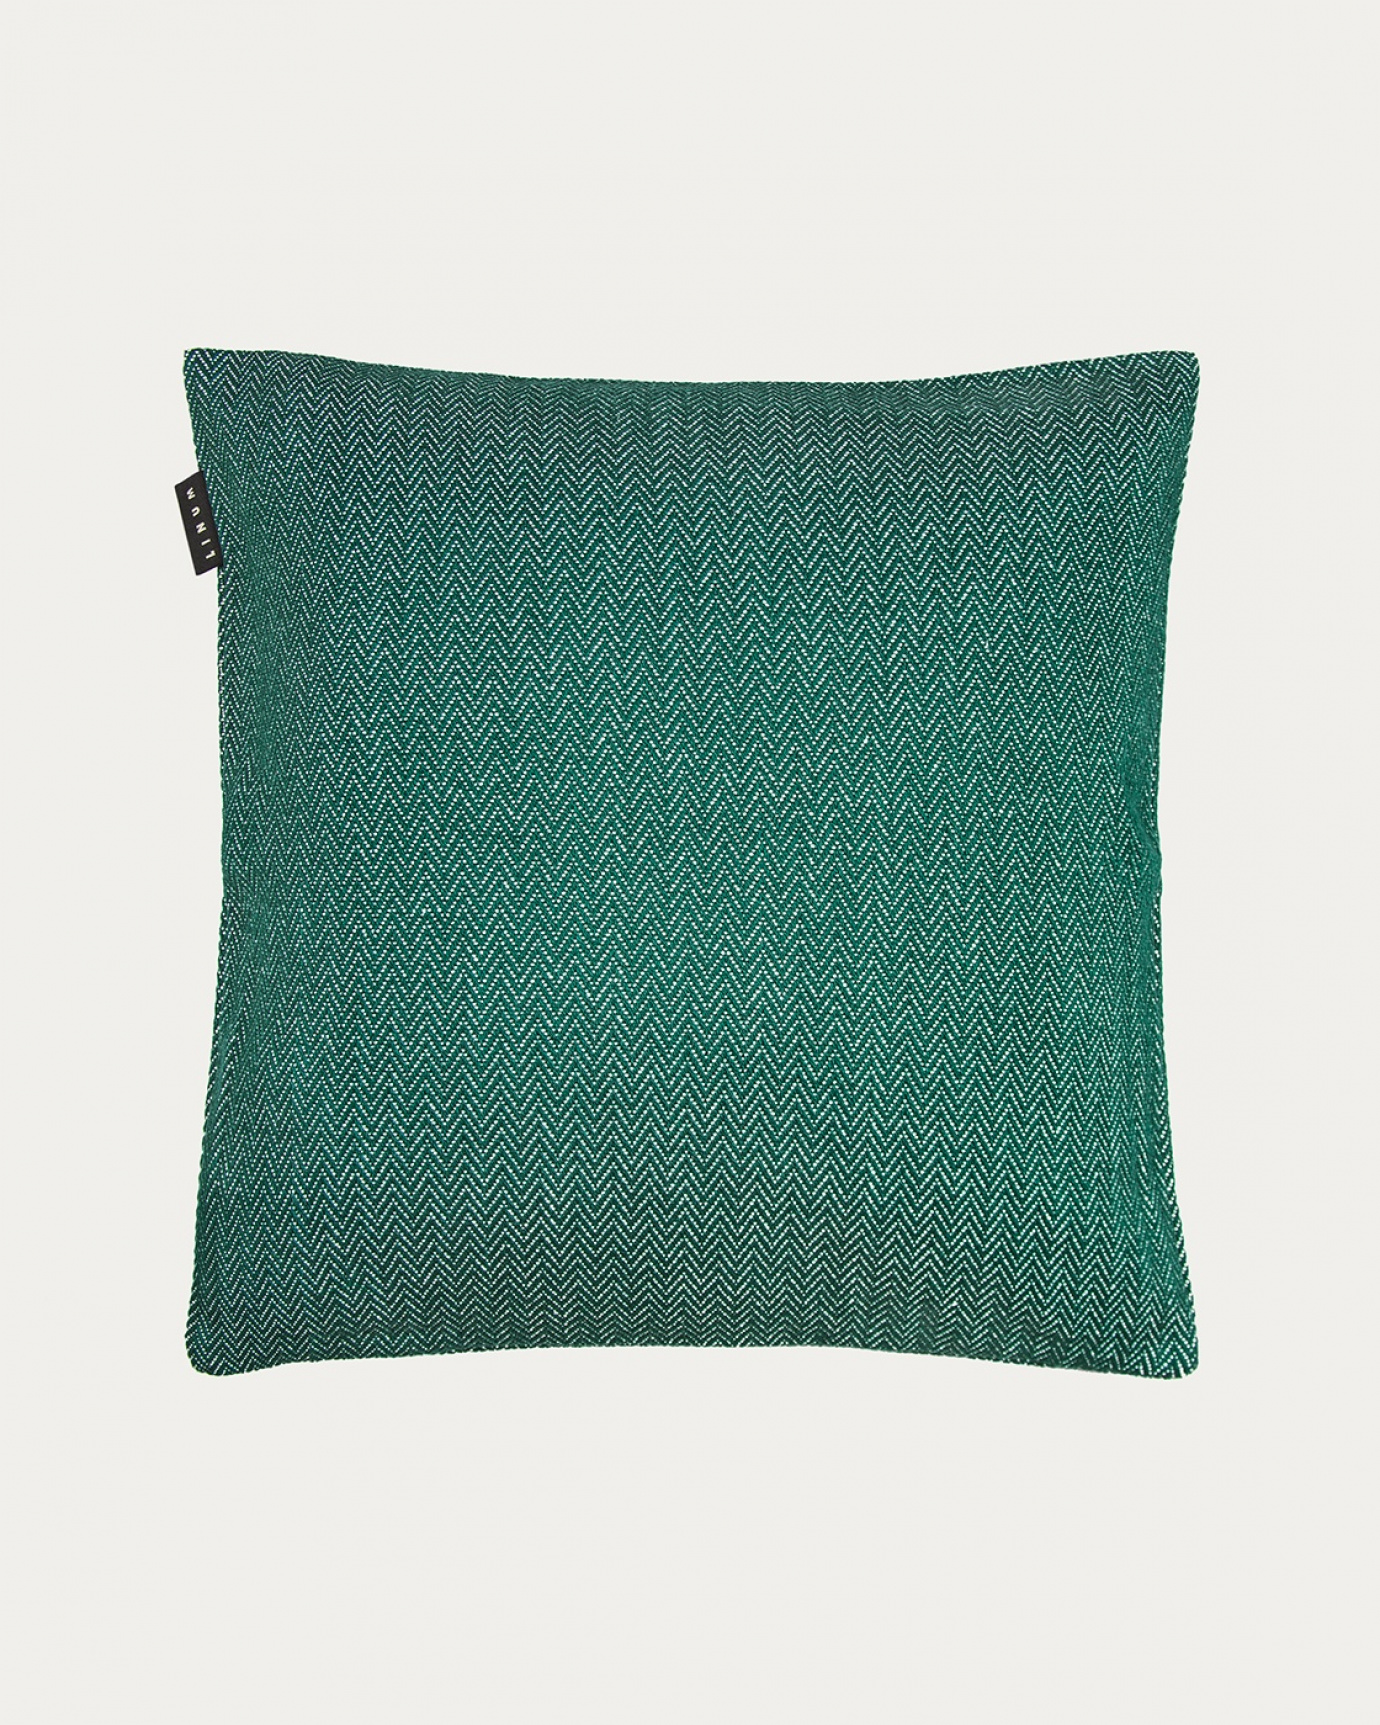 Produktbild tief smaragdgrün SHEPARD Kissenhülle aus weicher Baumwolle mit dezentem Fischgrätmuster von LINUM DESIGN. Größe 50x50 cm.